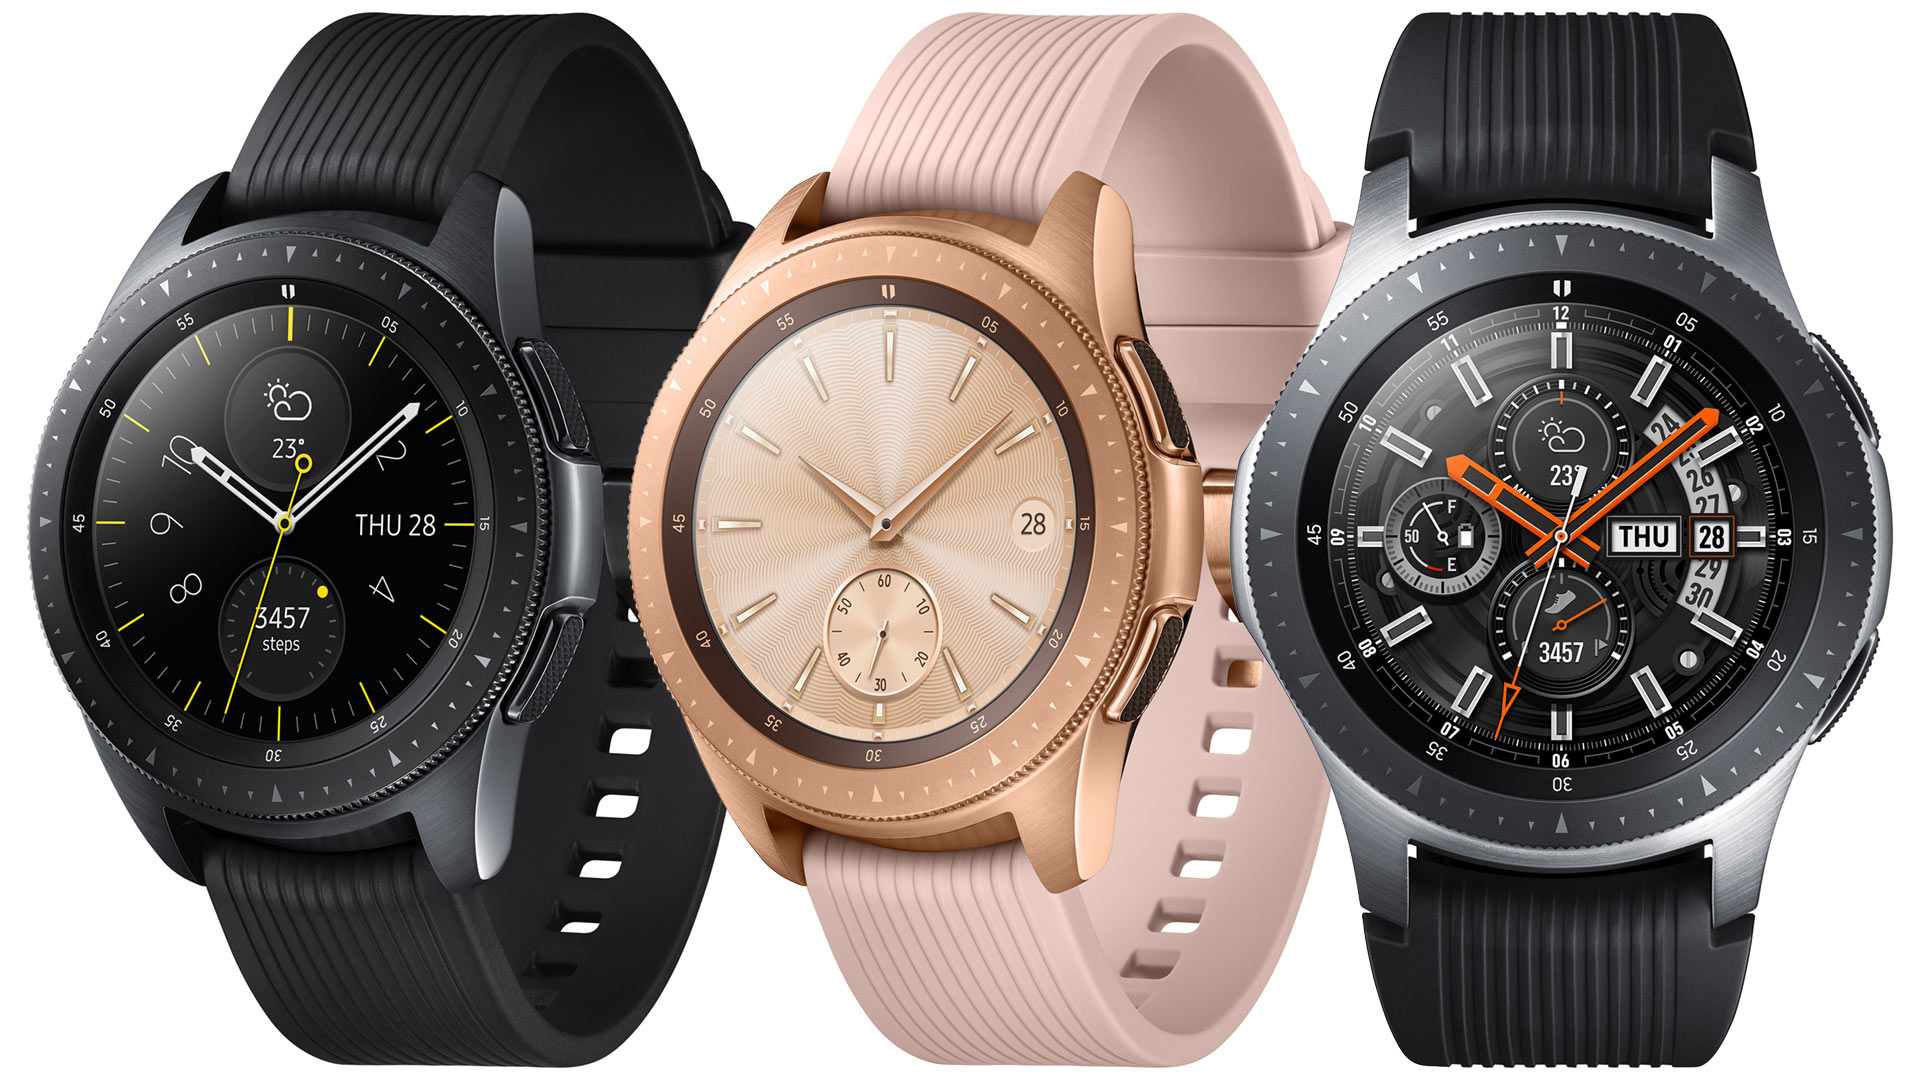 Galaxy watch спб. Samsung Galaxy watch 42mm. Samsung Galaxy watch 4 45mm. Samsung Galaxy watch 2018. Samsung Galaxy watch SM-r810.